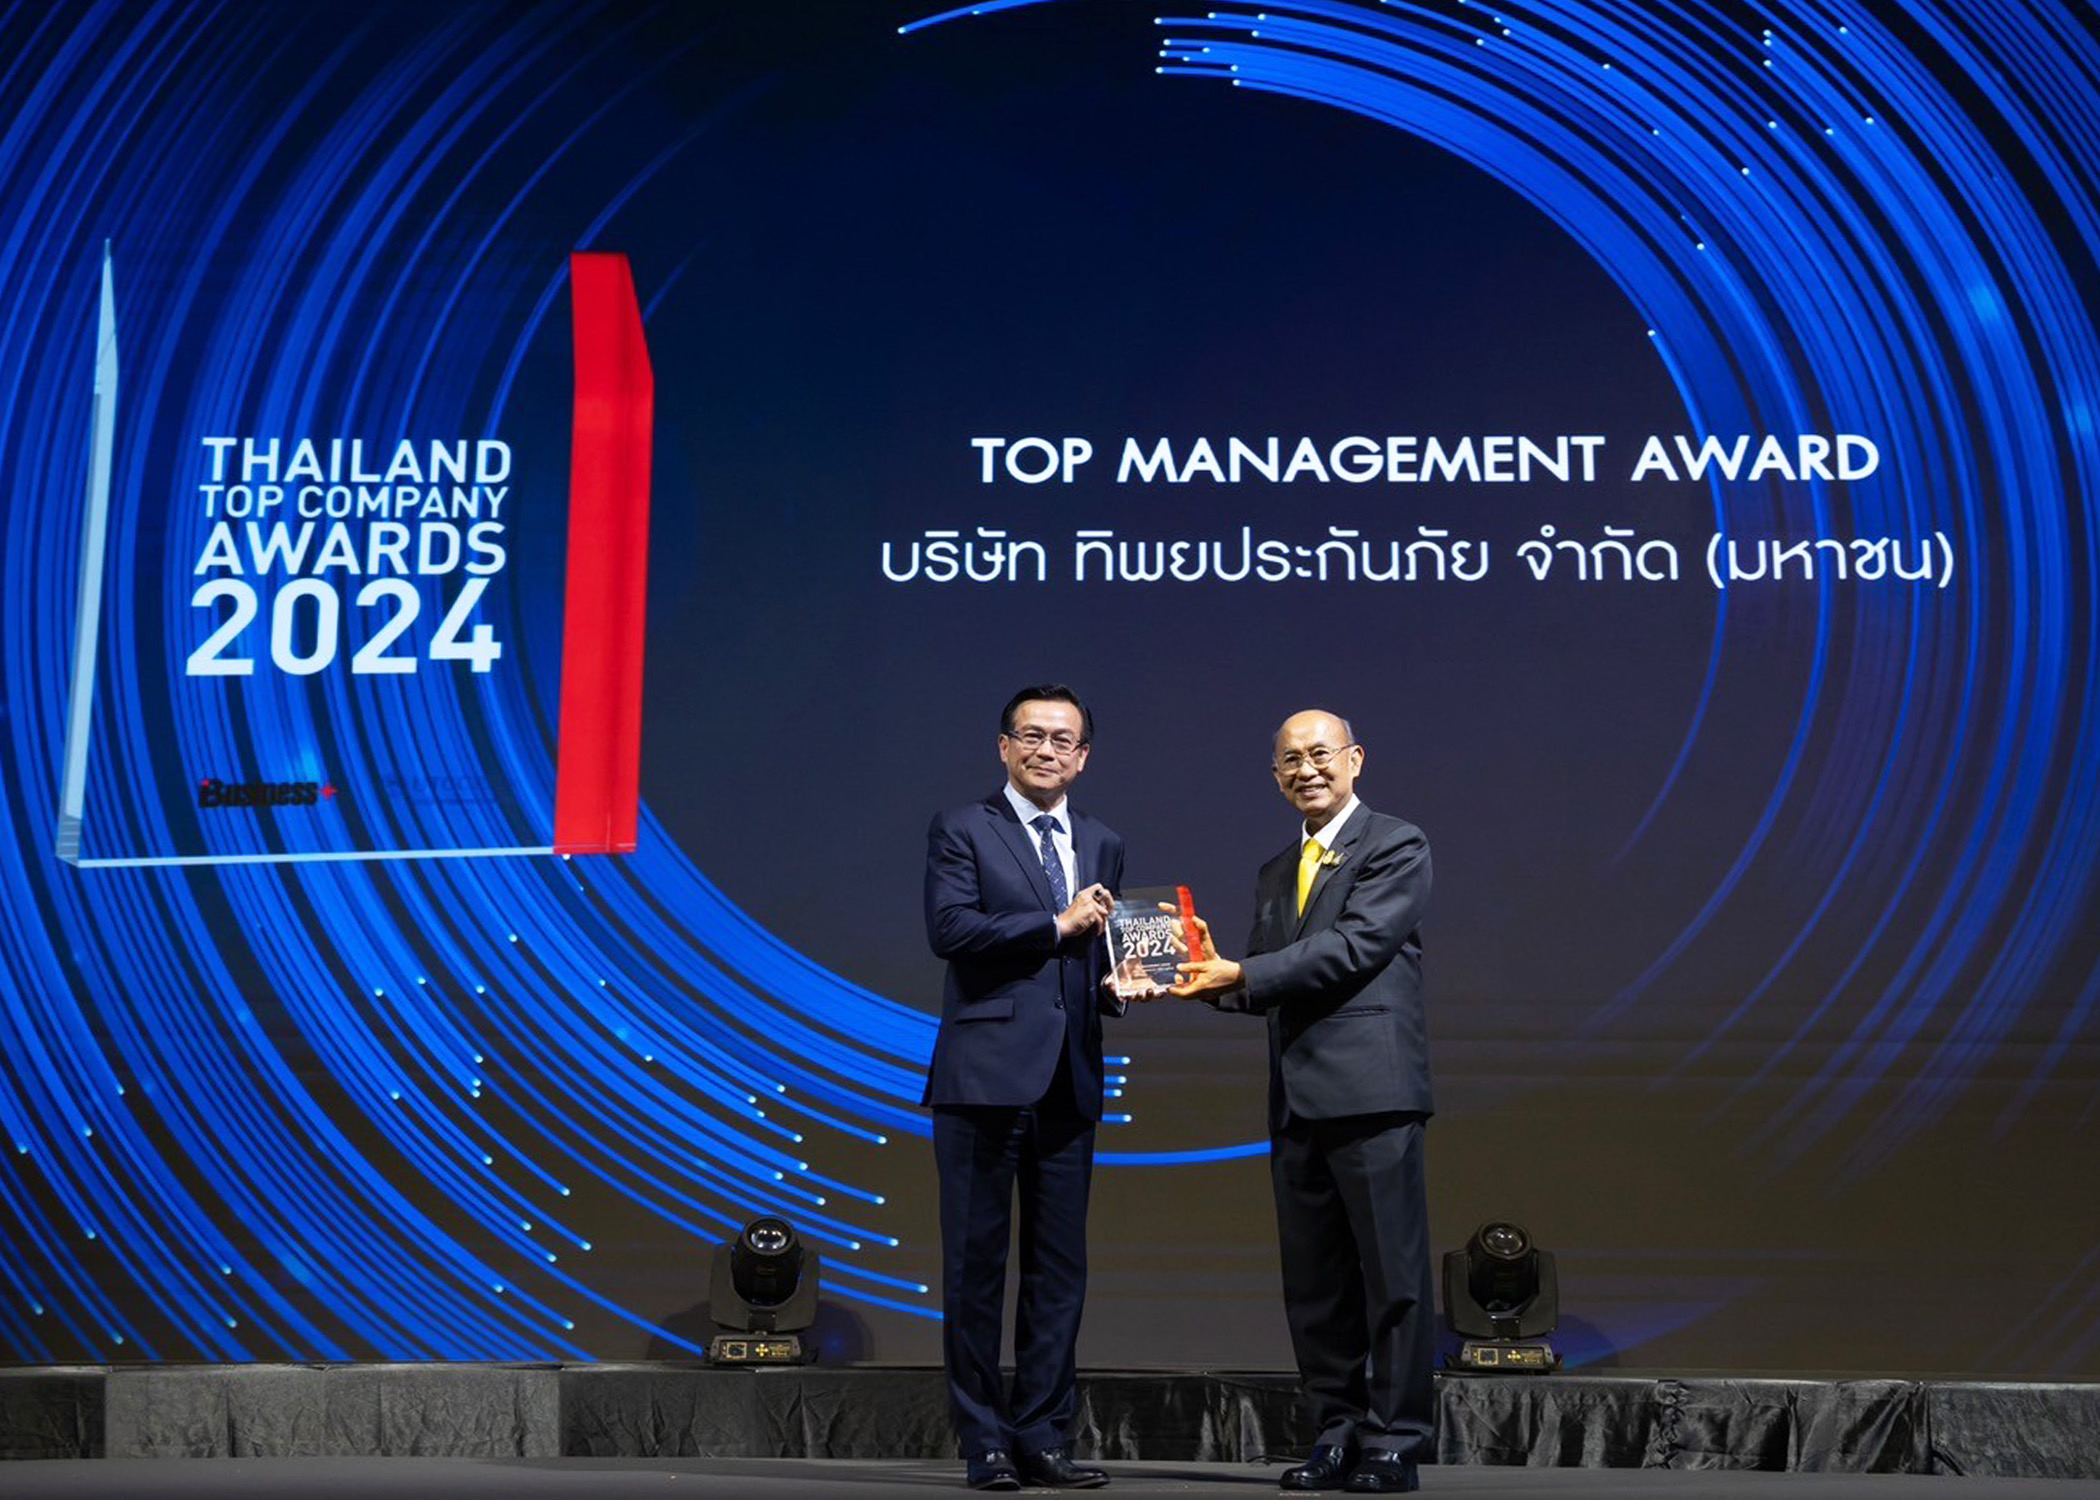 ทิพยประกันภัย คว้ารางวัล “THAILAND TOP COMPANY AWARDS 2024” ในประเภท TOP MANAGEMENT AWARD ตอกย้ำความเป็นผู้นำด้านการบริหารงานยอดเยี่ยมในทุกมิติ